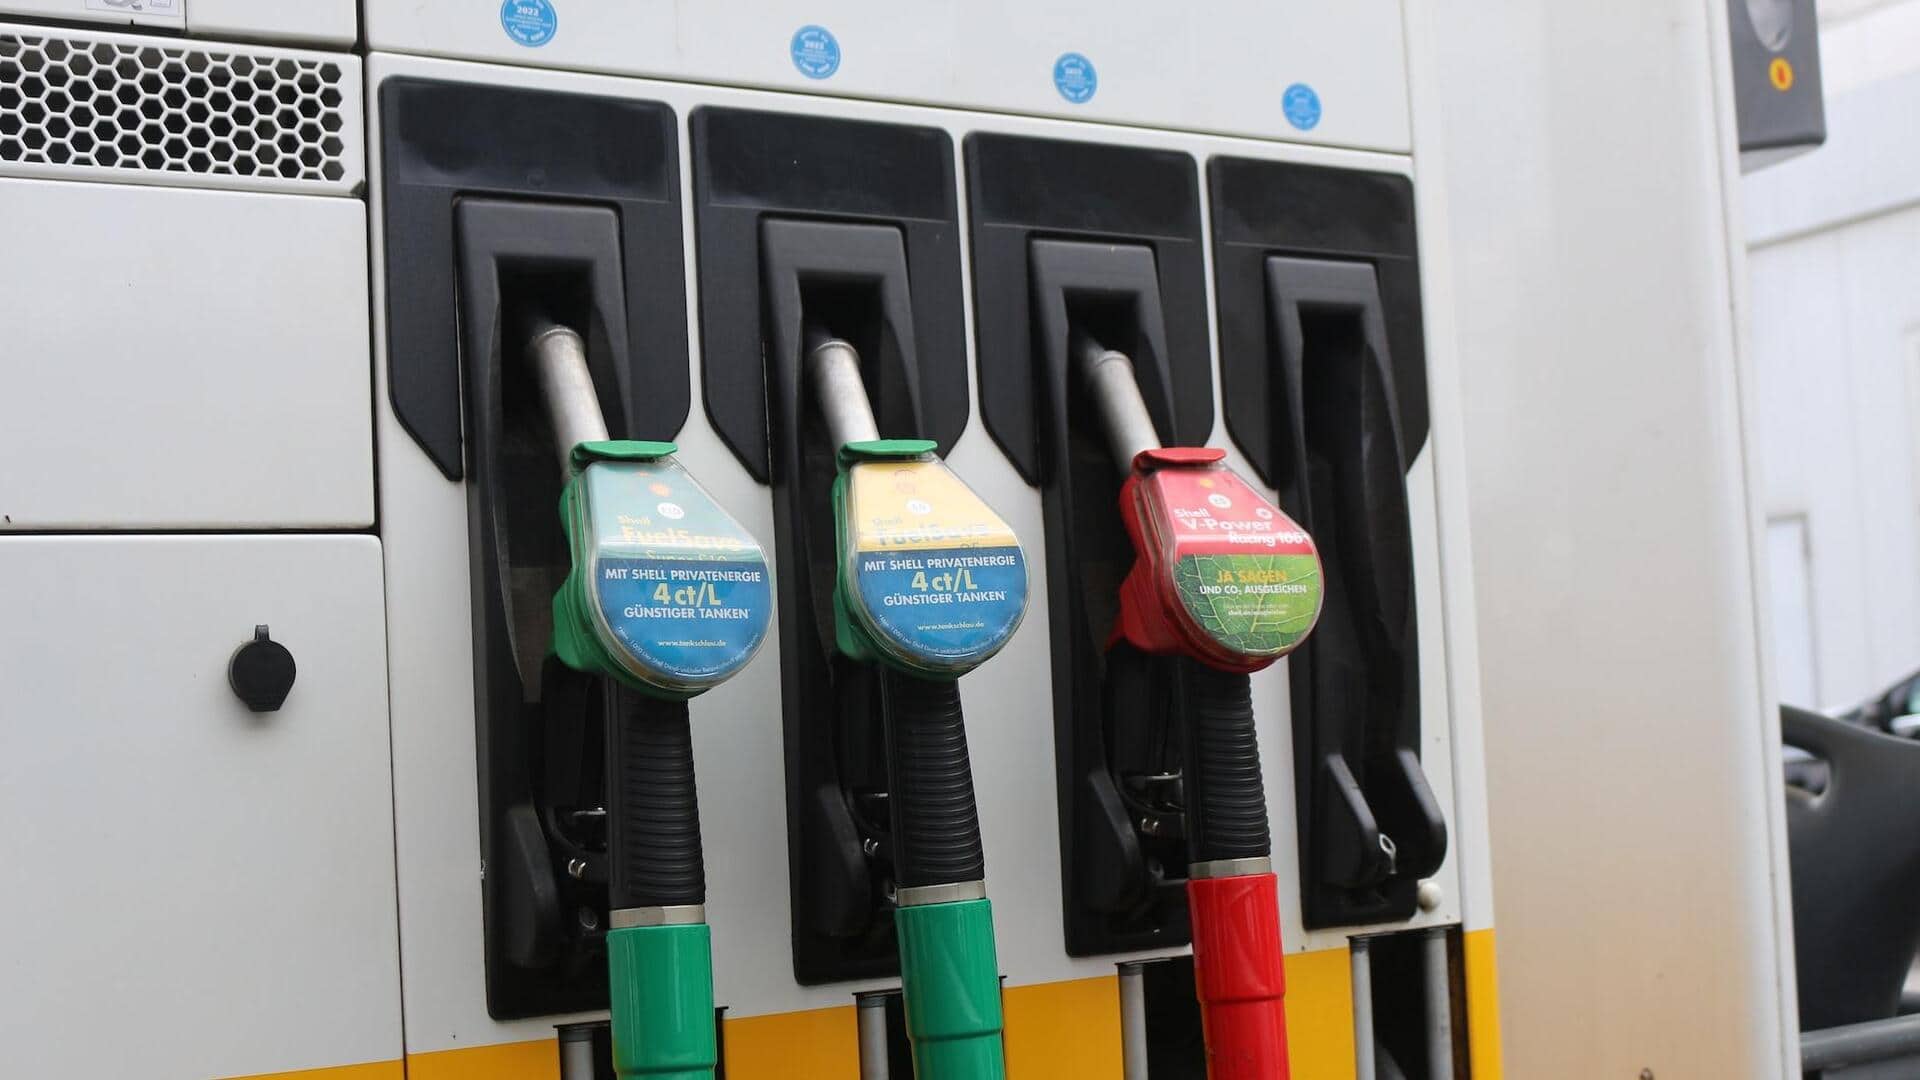 पेट्रोल-डीजल की कीमत: 2 दिसंबर के लिए जारी हुई नई कीमतें, जानिए कितना हुआ बदलाव 